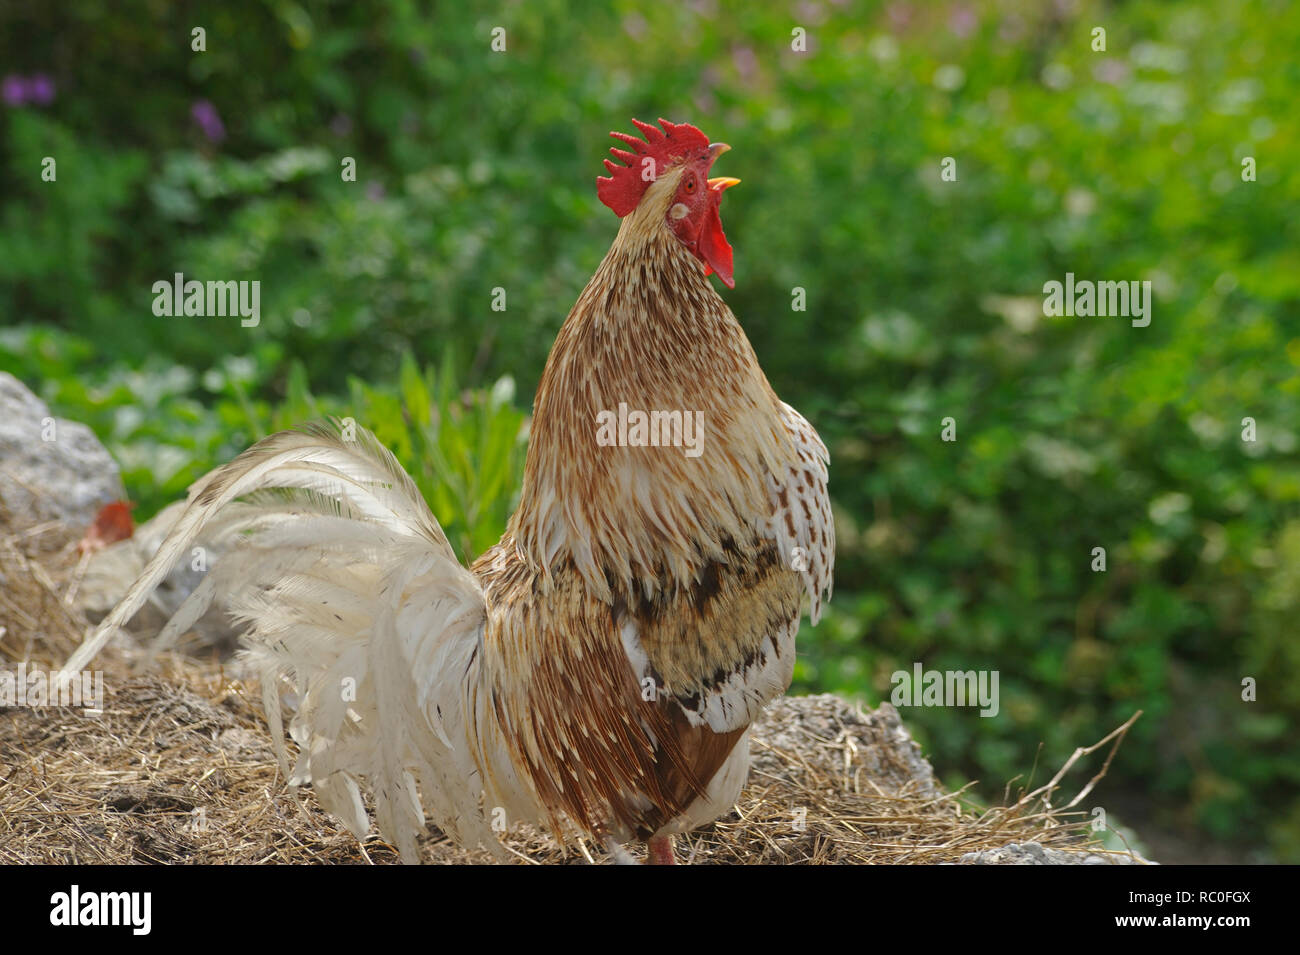 Hühner in freier Natur auf der Wiese Foto Stock